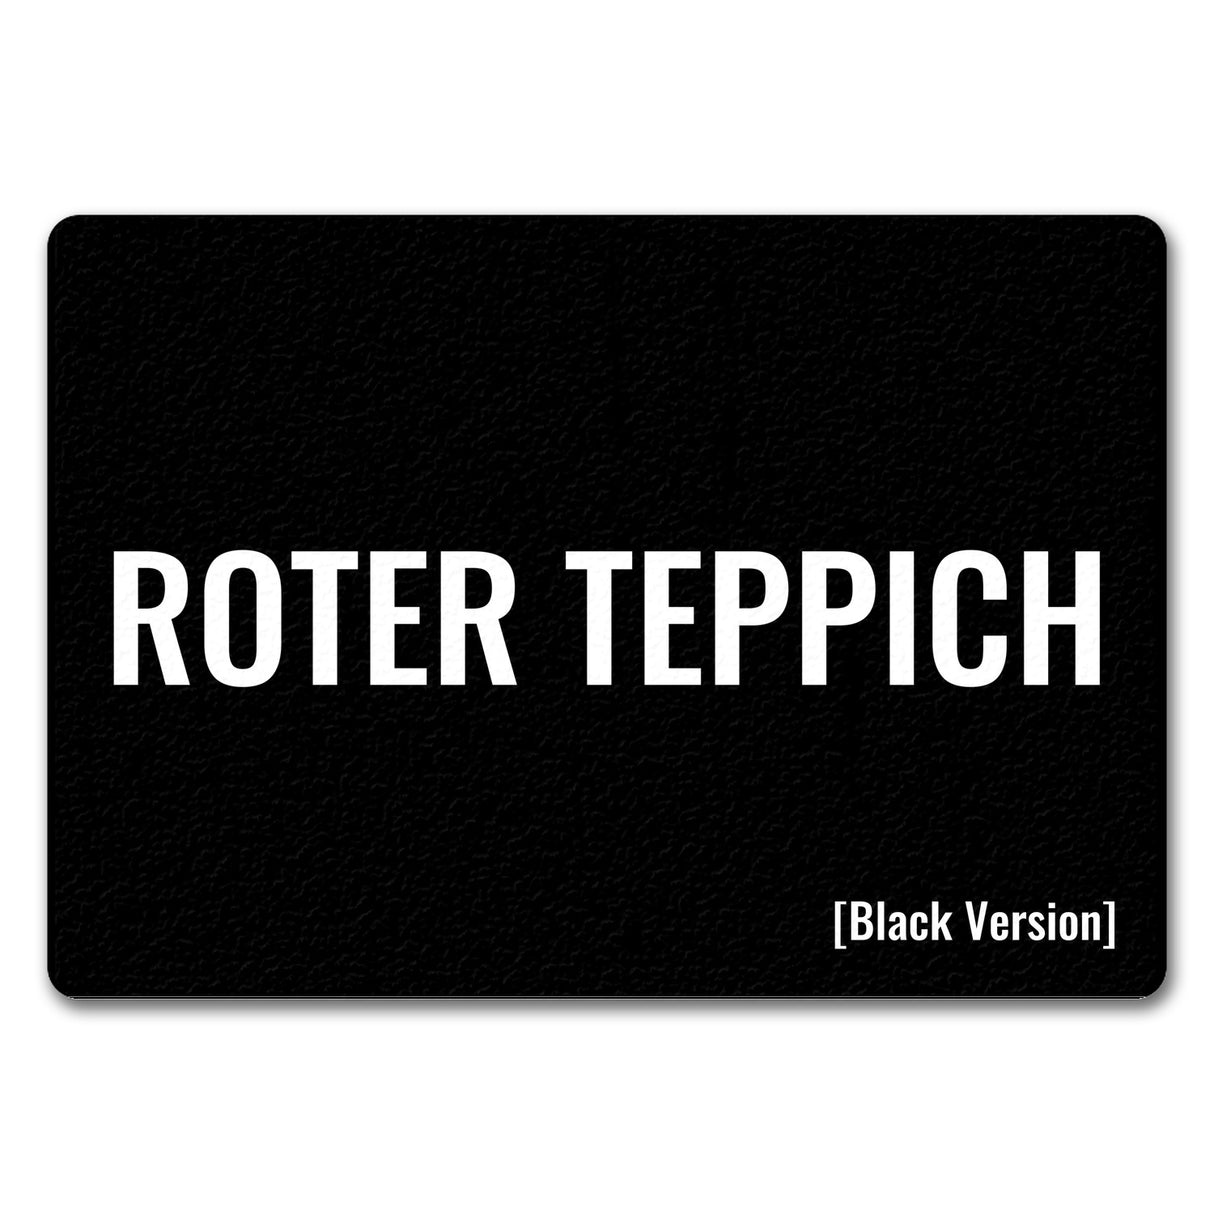 Roter Teppich [Black Version] Fußmatte